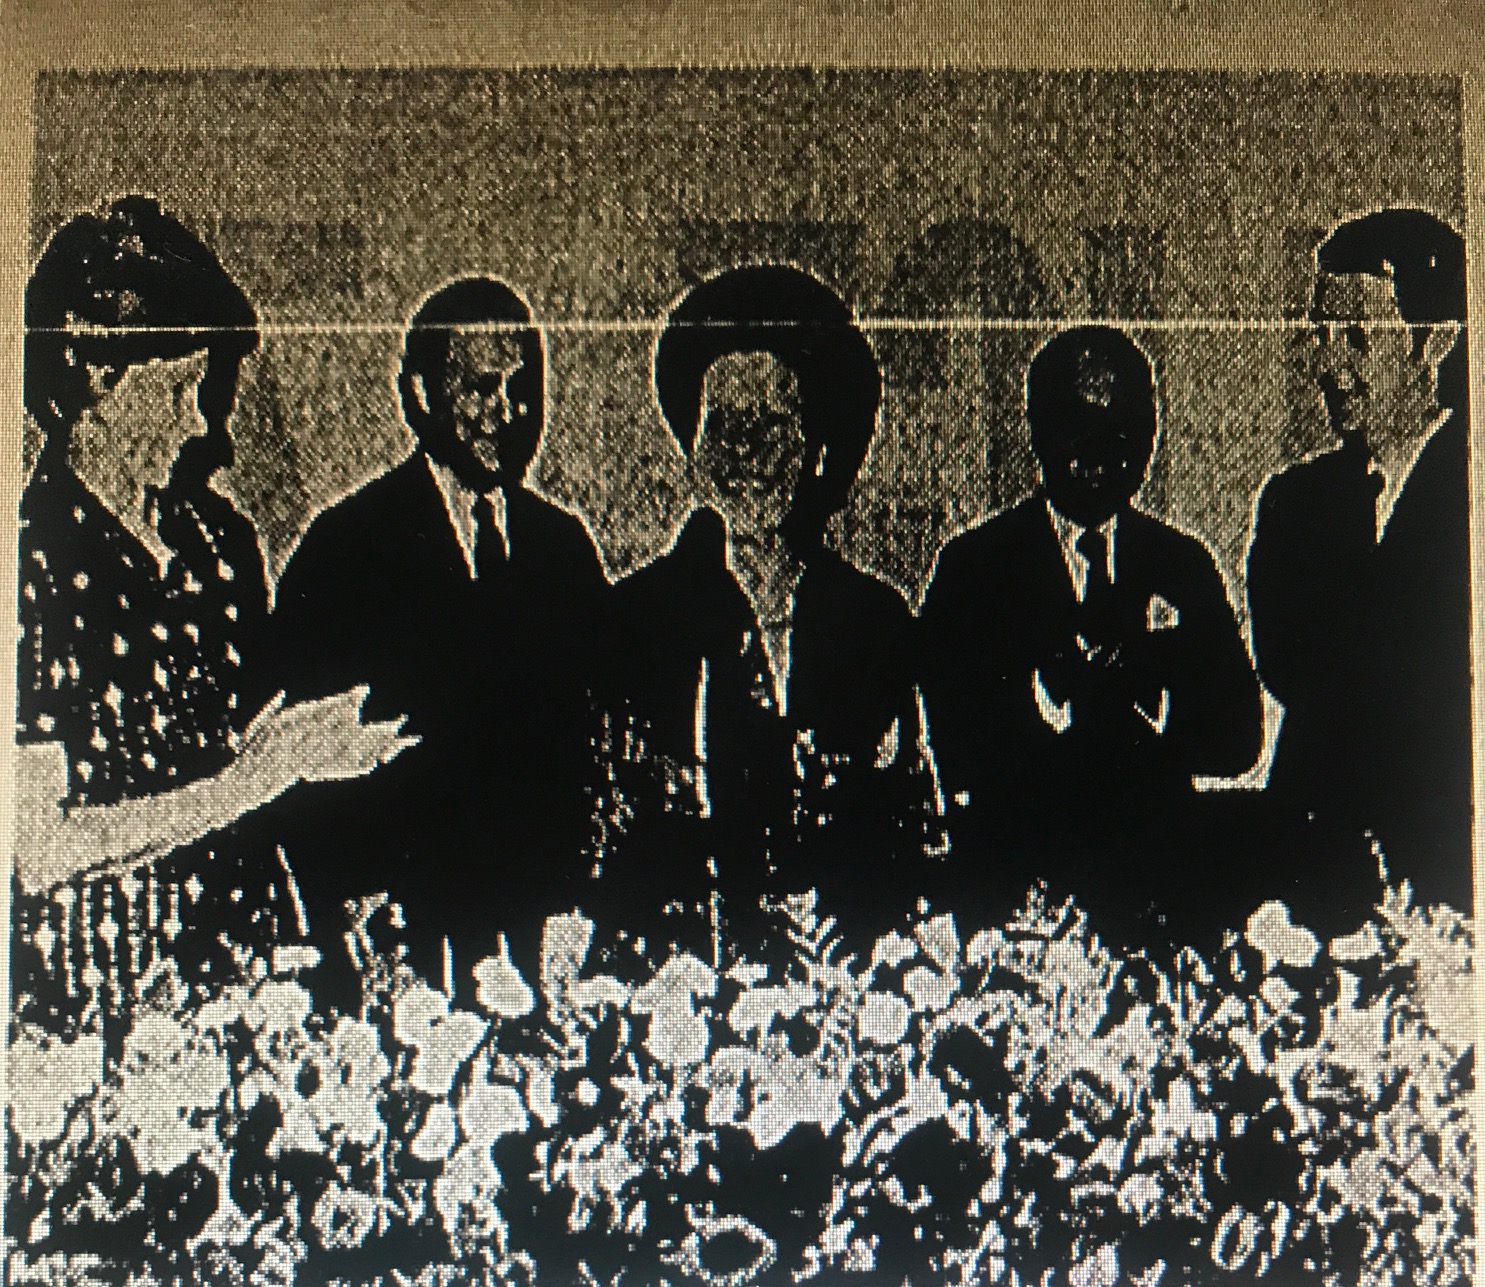 Entrega do título de “Cidadã Paulistana” à senhora Maria Antonieta de Castro pela Câmara Municipal de São Paulo. Fonte: Diario da Noite, 17/03/1972, p. 2.